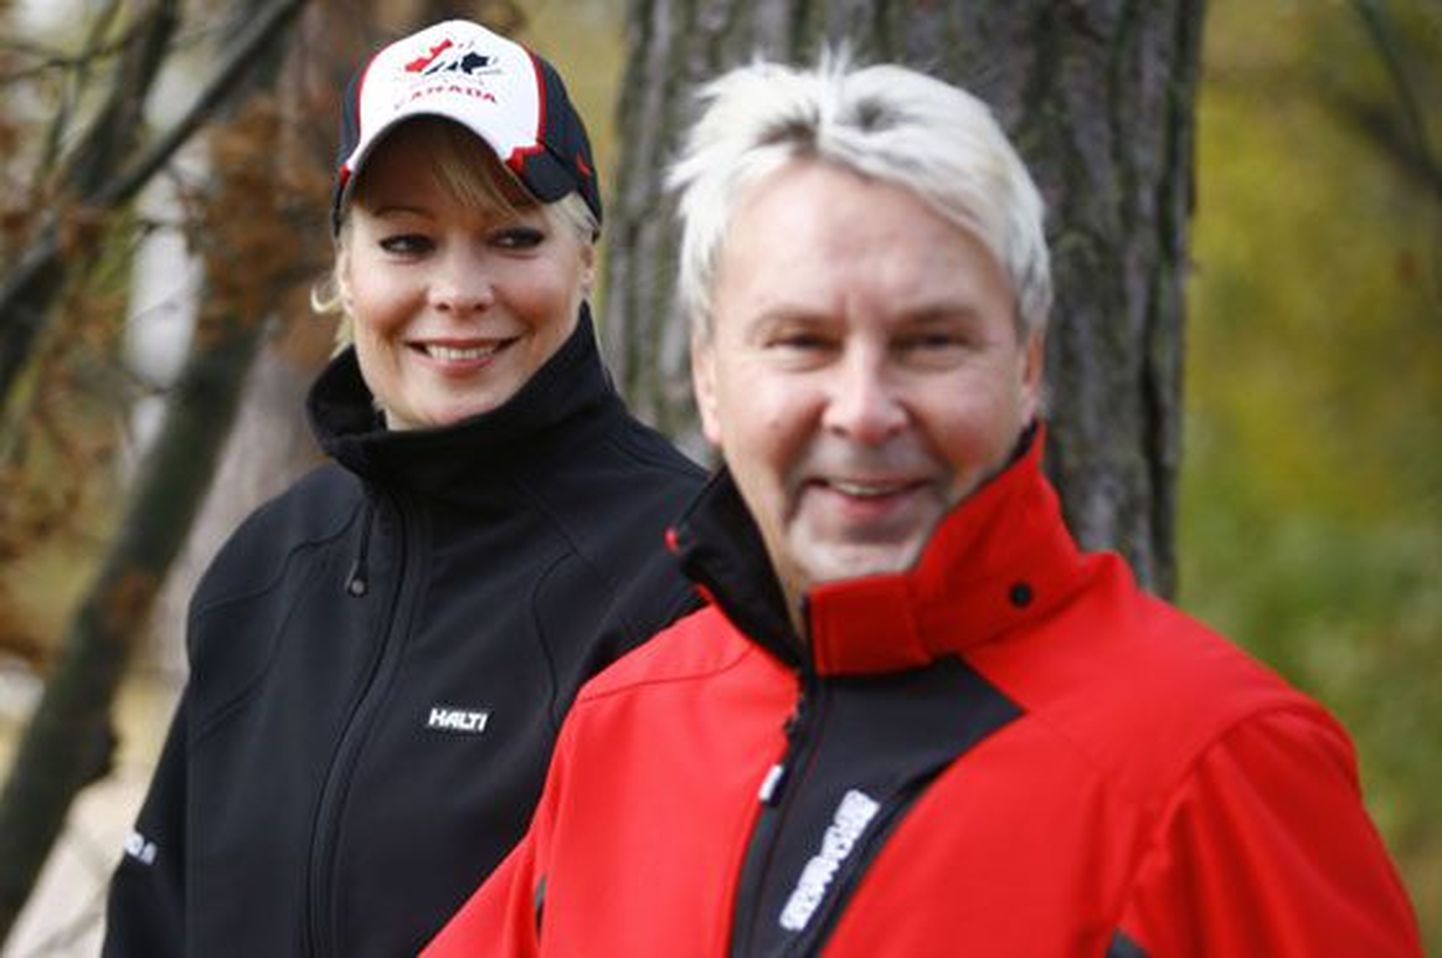 Matti Ensio Nykänen (50)on endine Soome suusahüppaja, mitmekordne olümpiavõitja ja maailmameister. Pärast sportlaskarjääri on esinenud ka  lauljana. Pildil koos oma praeguse elukaaslase Susannaga